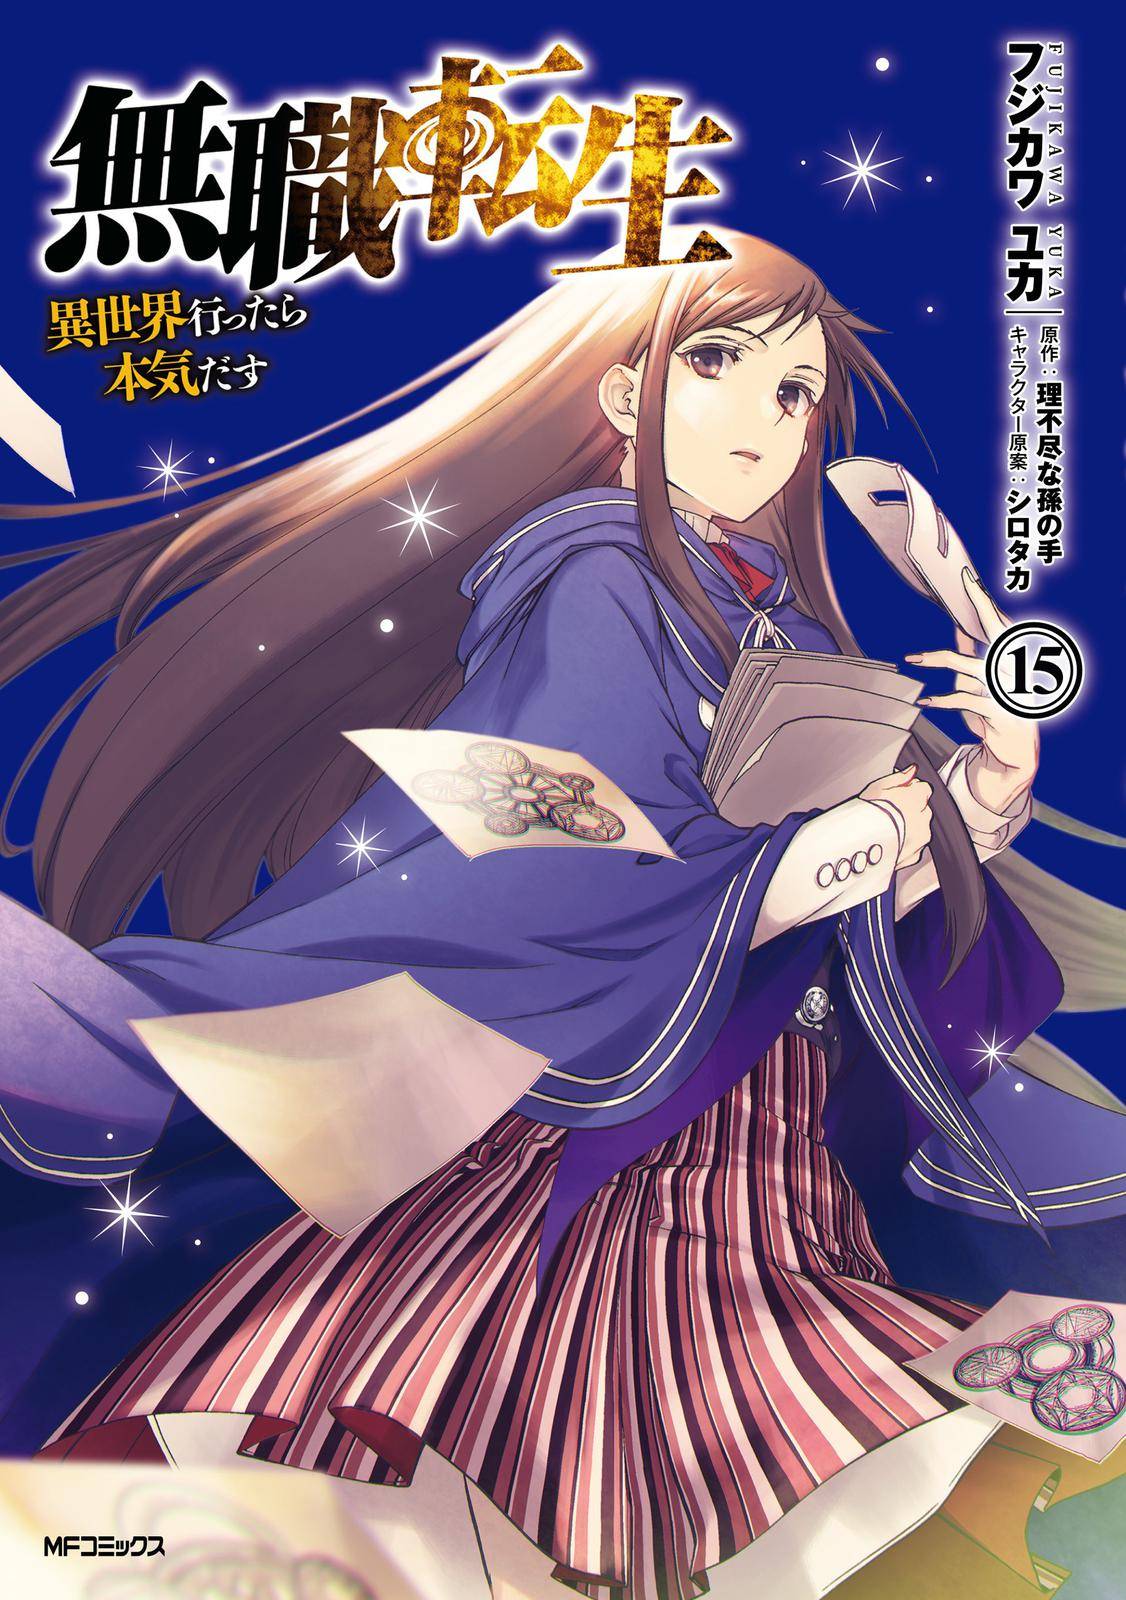 Mushoku Tensei - Isekai Ittara Honki Dasu - chapter 74 - #1